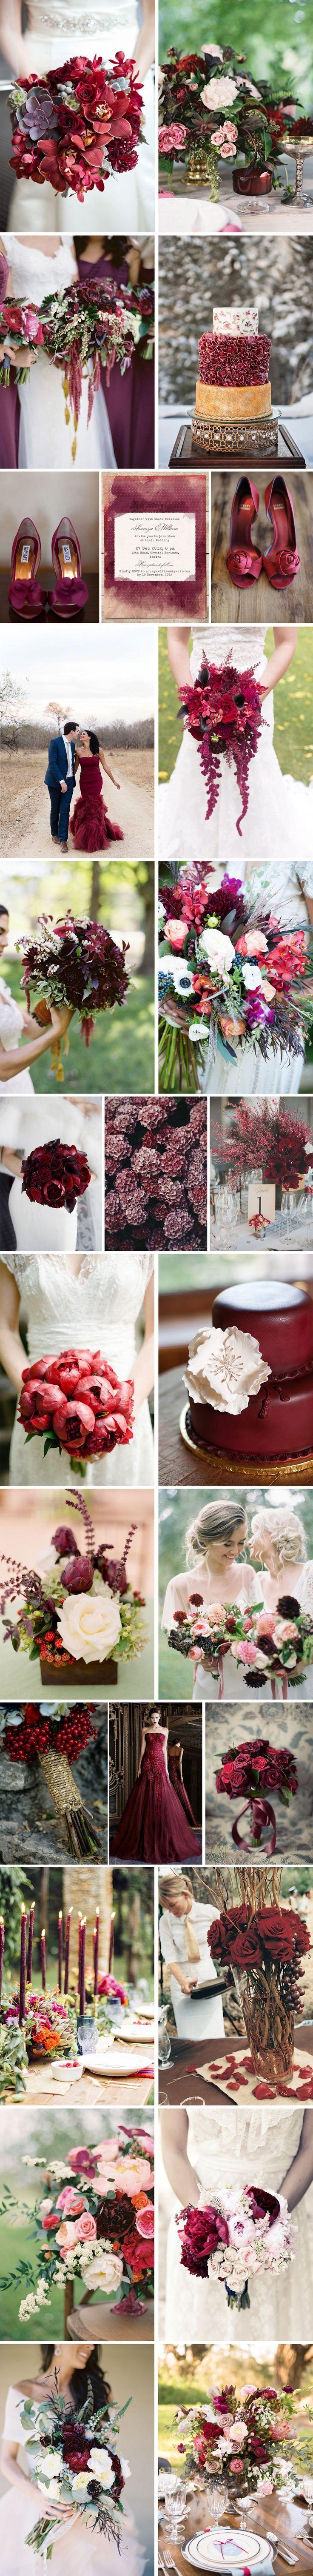 Wedding - Pantone Color Of 2015 Marsala Wedding Color Ideas